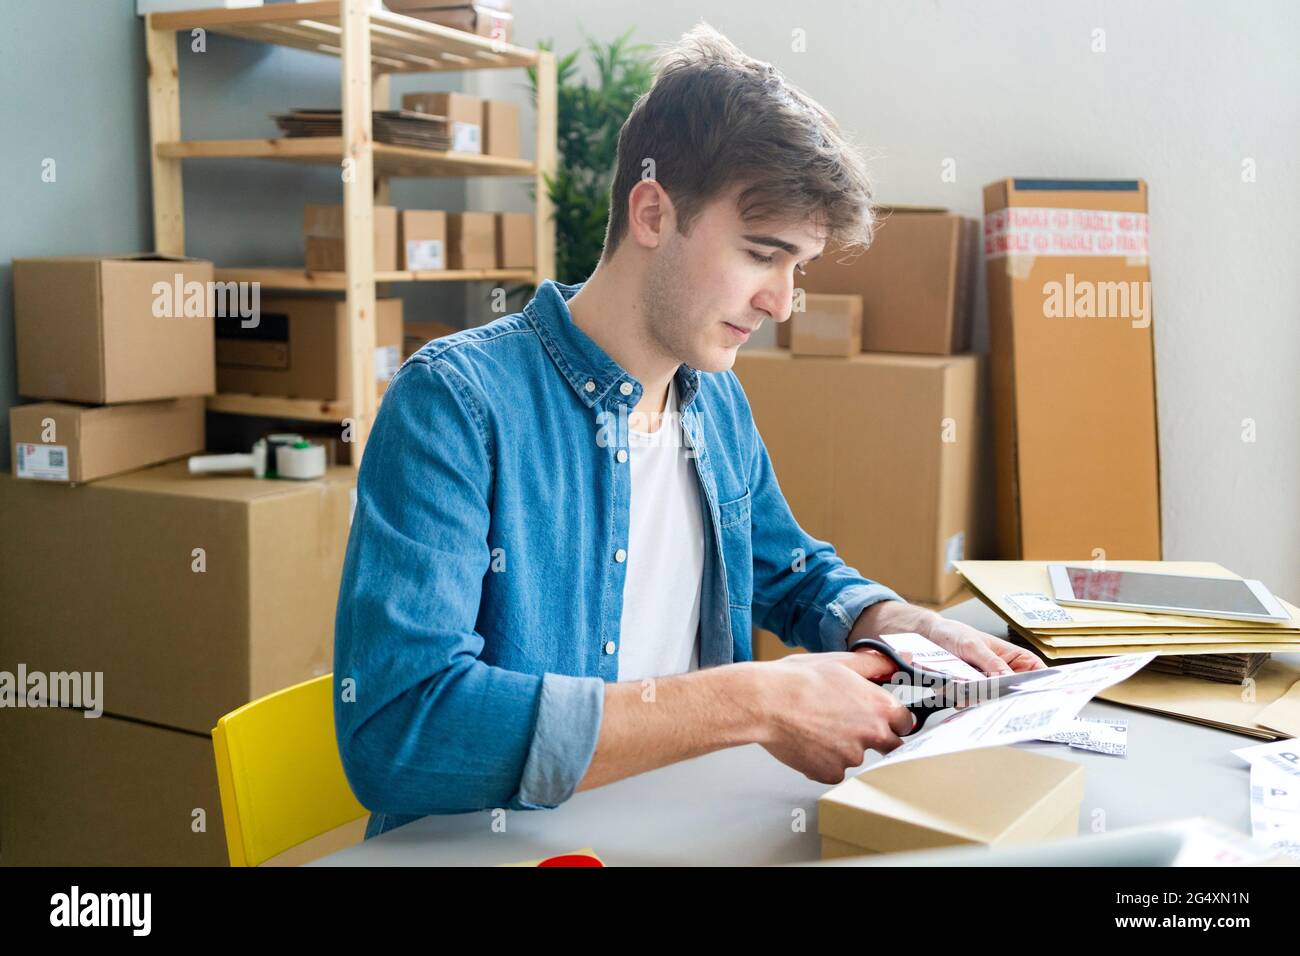 Ein Geschäftsmann schneidet am Schreibtisch ein Strichcode-Etikett ab Stockfoto